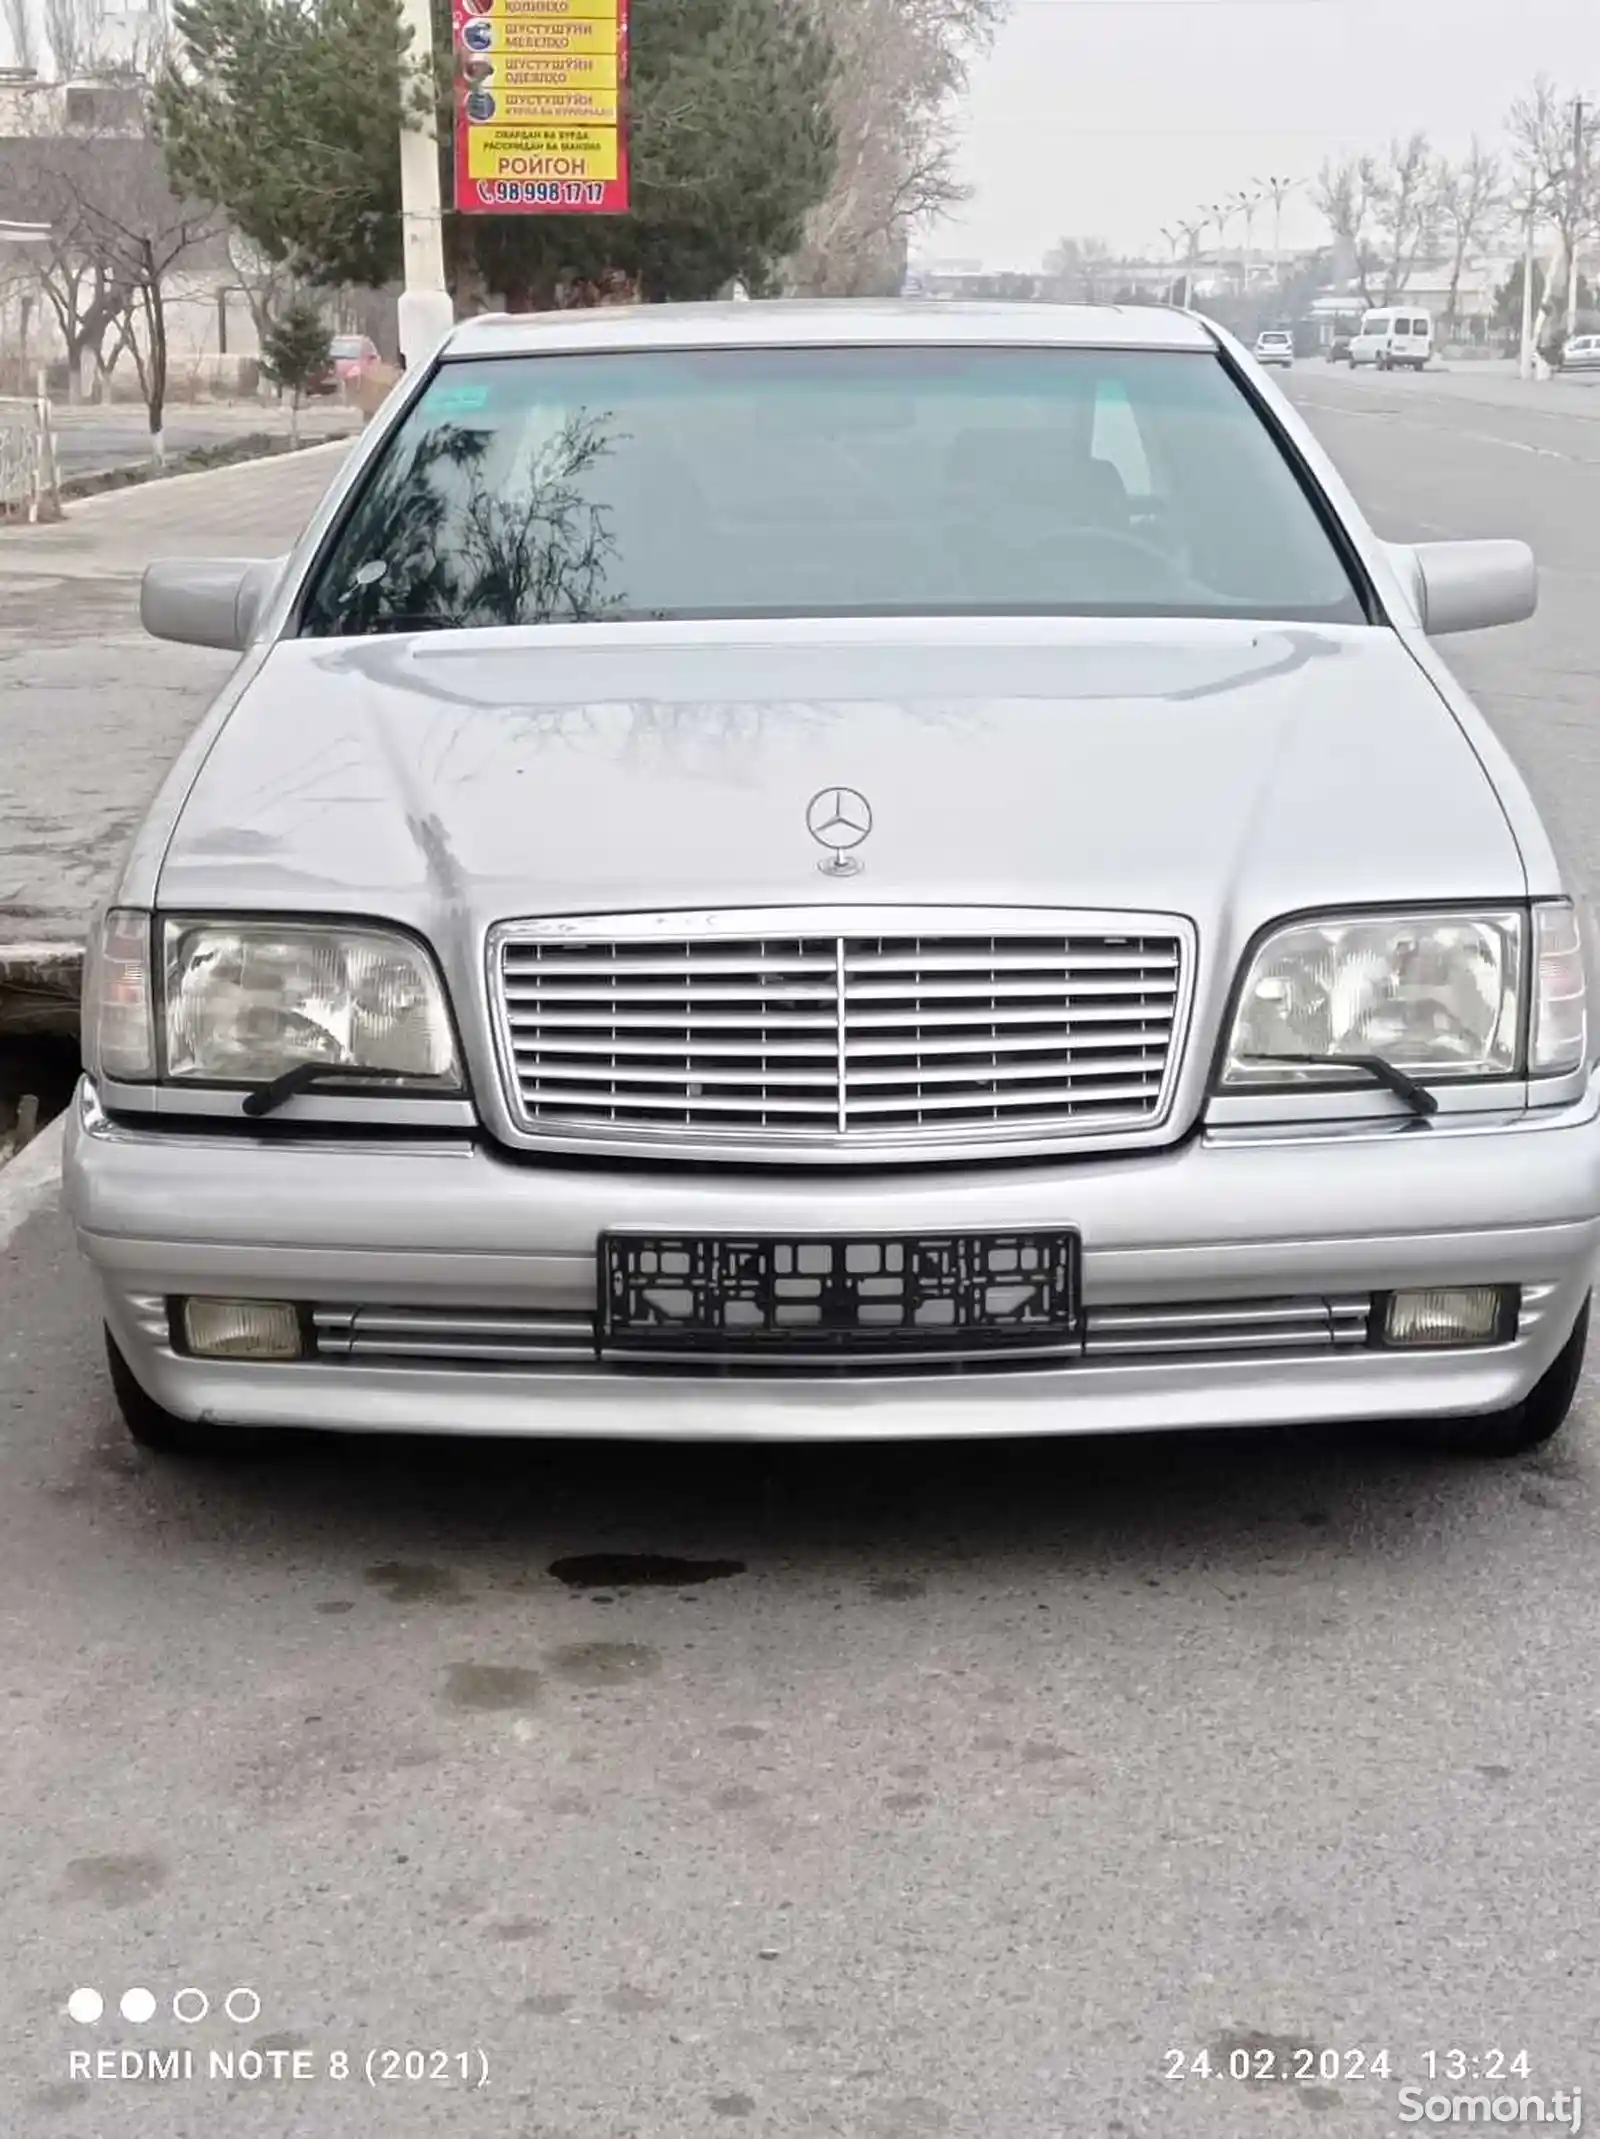 Mercedes-Benz S class, 1994-1